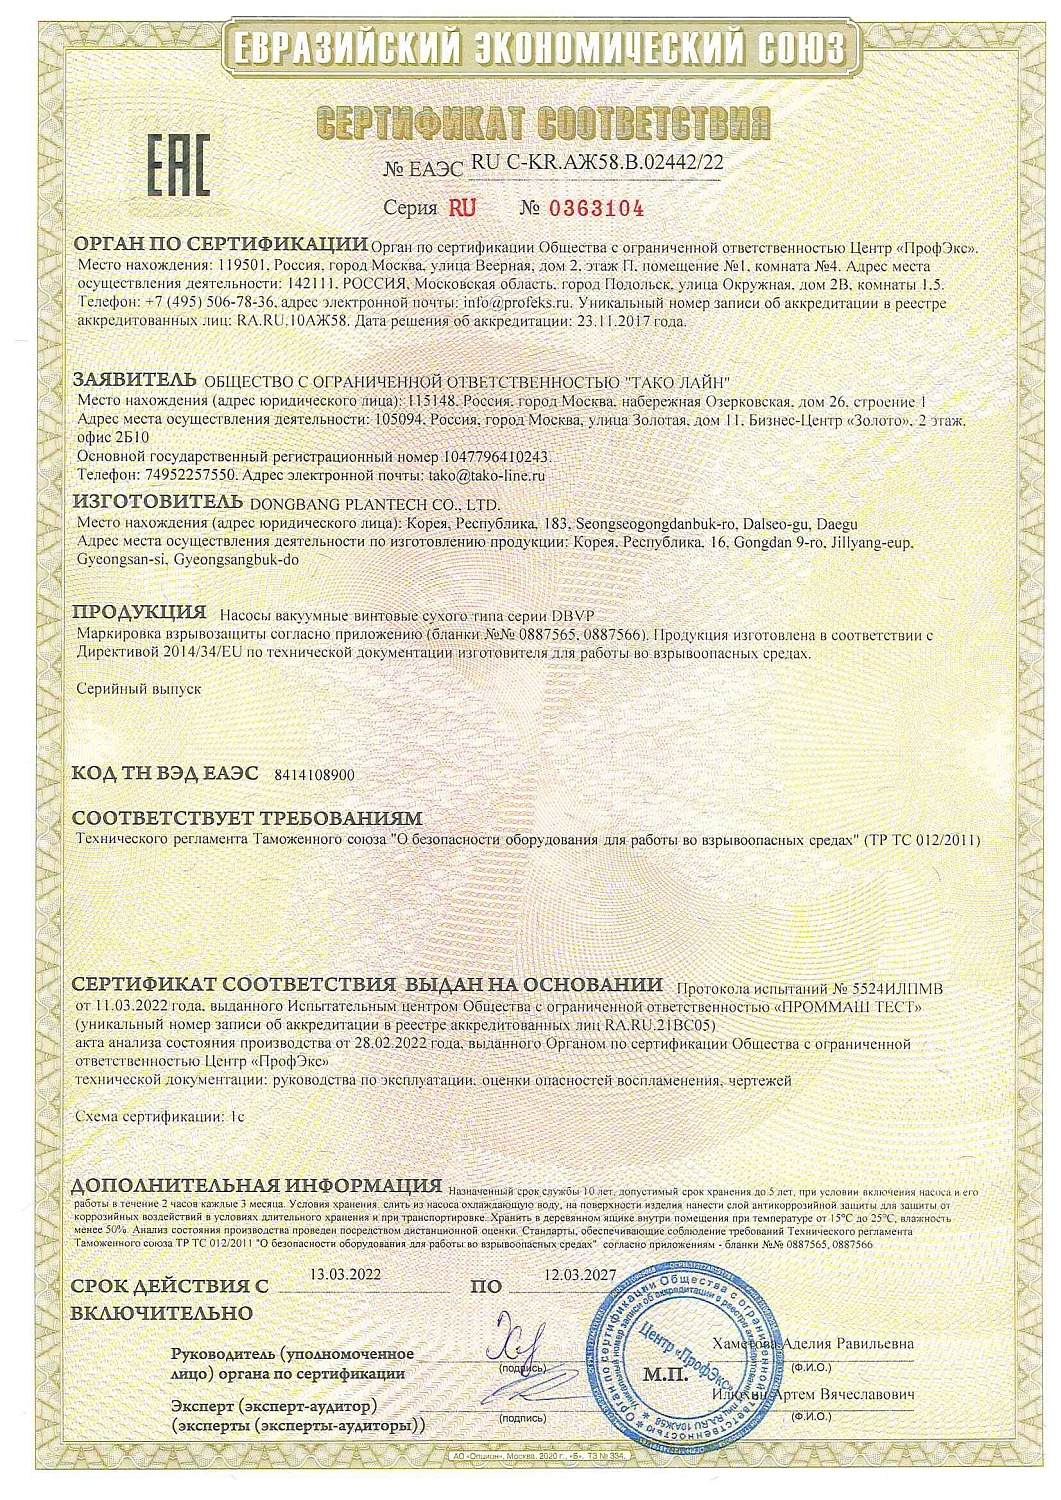 Компания "ТАКО Лайн" получила сертификат ТР ТС 012/2011 на сухие винтовые вакуумные насосы Серии DBVP (Ю.Корея) для работы во взрывоопасных средах